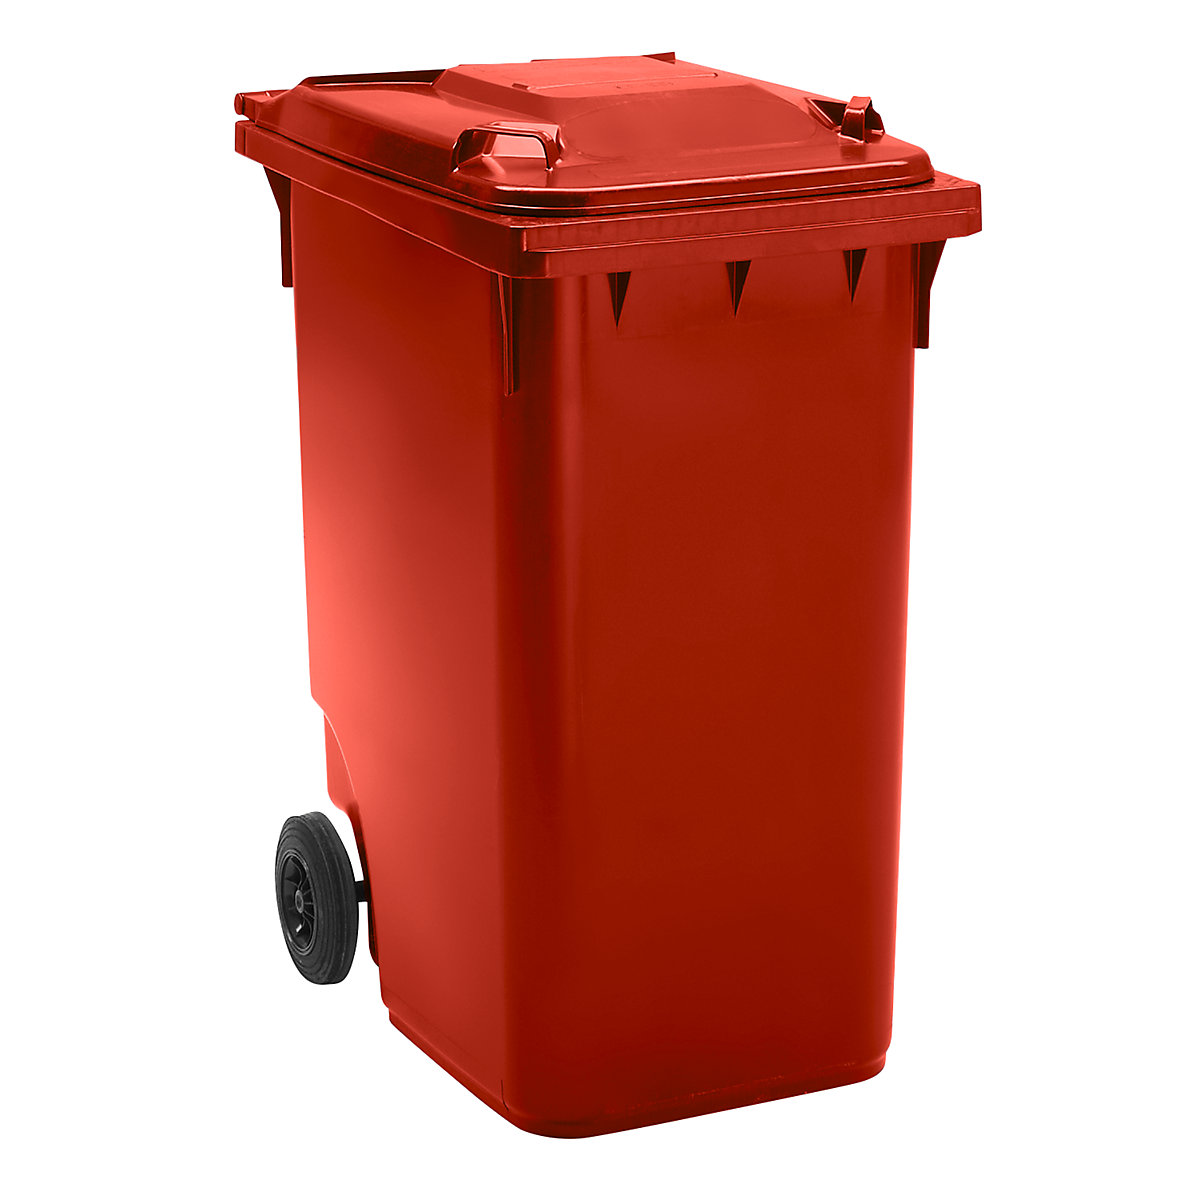 Pojemnik na odpady, z tworzywa, DIN EN 840, poj. 360 l, wys. x szer. x głęb. 665 x 1115 x 880 mm, Ø kółka 200 mm, czerwone, dostawa od 5 szt.-5